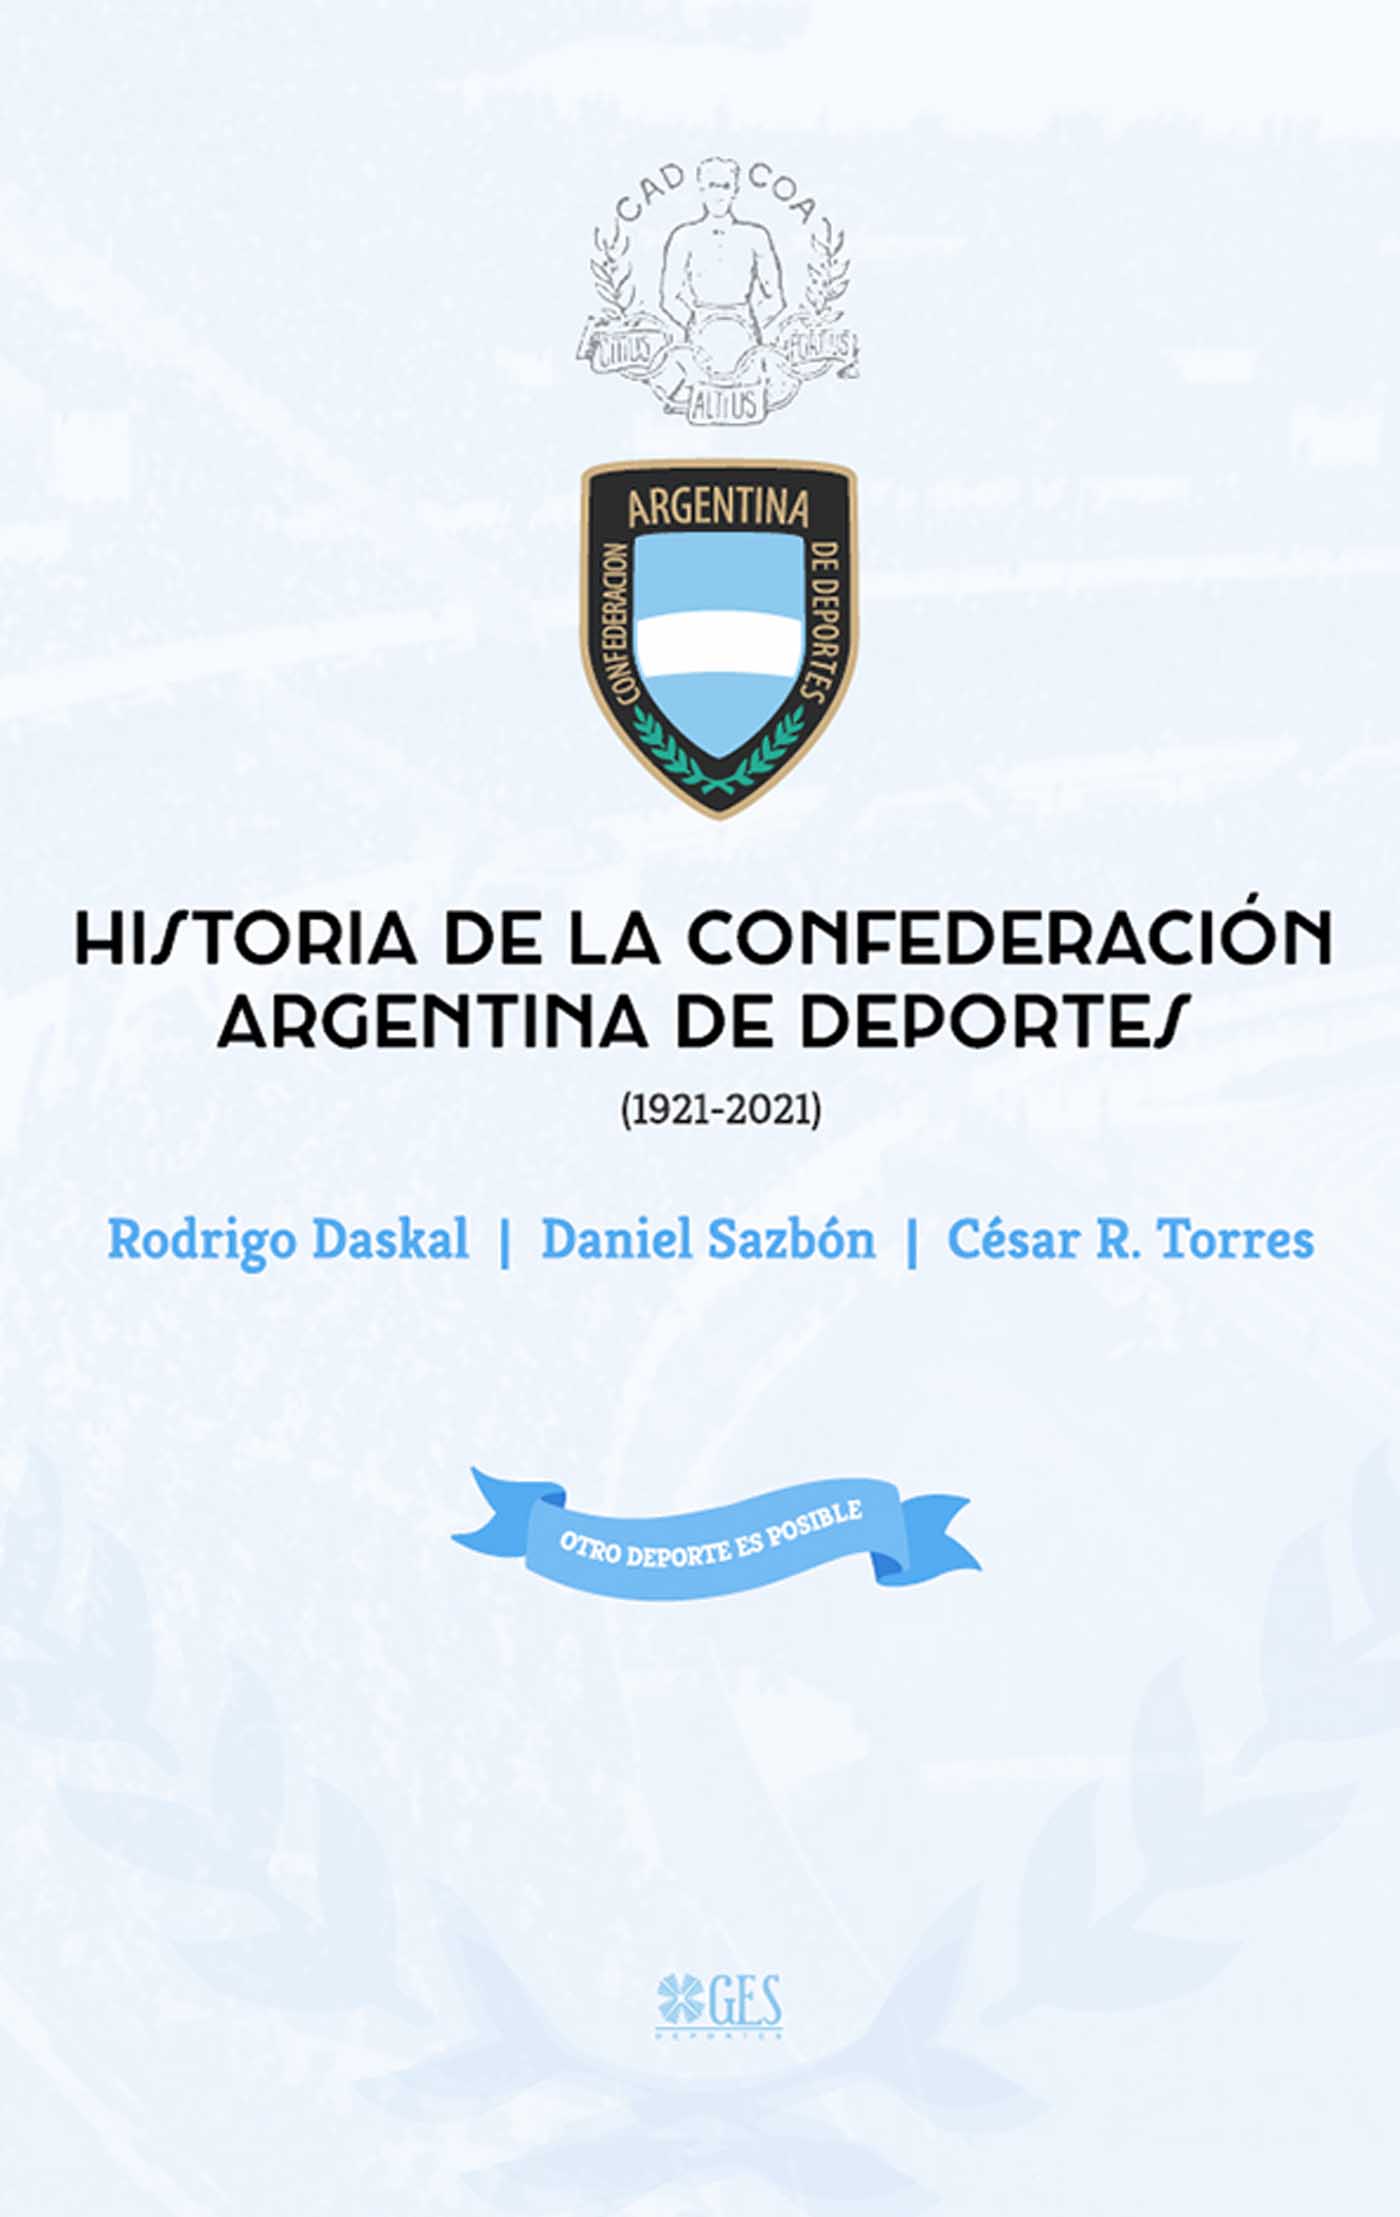 Historia de la confederación argentina de deportes